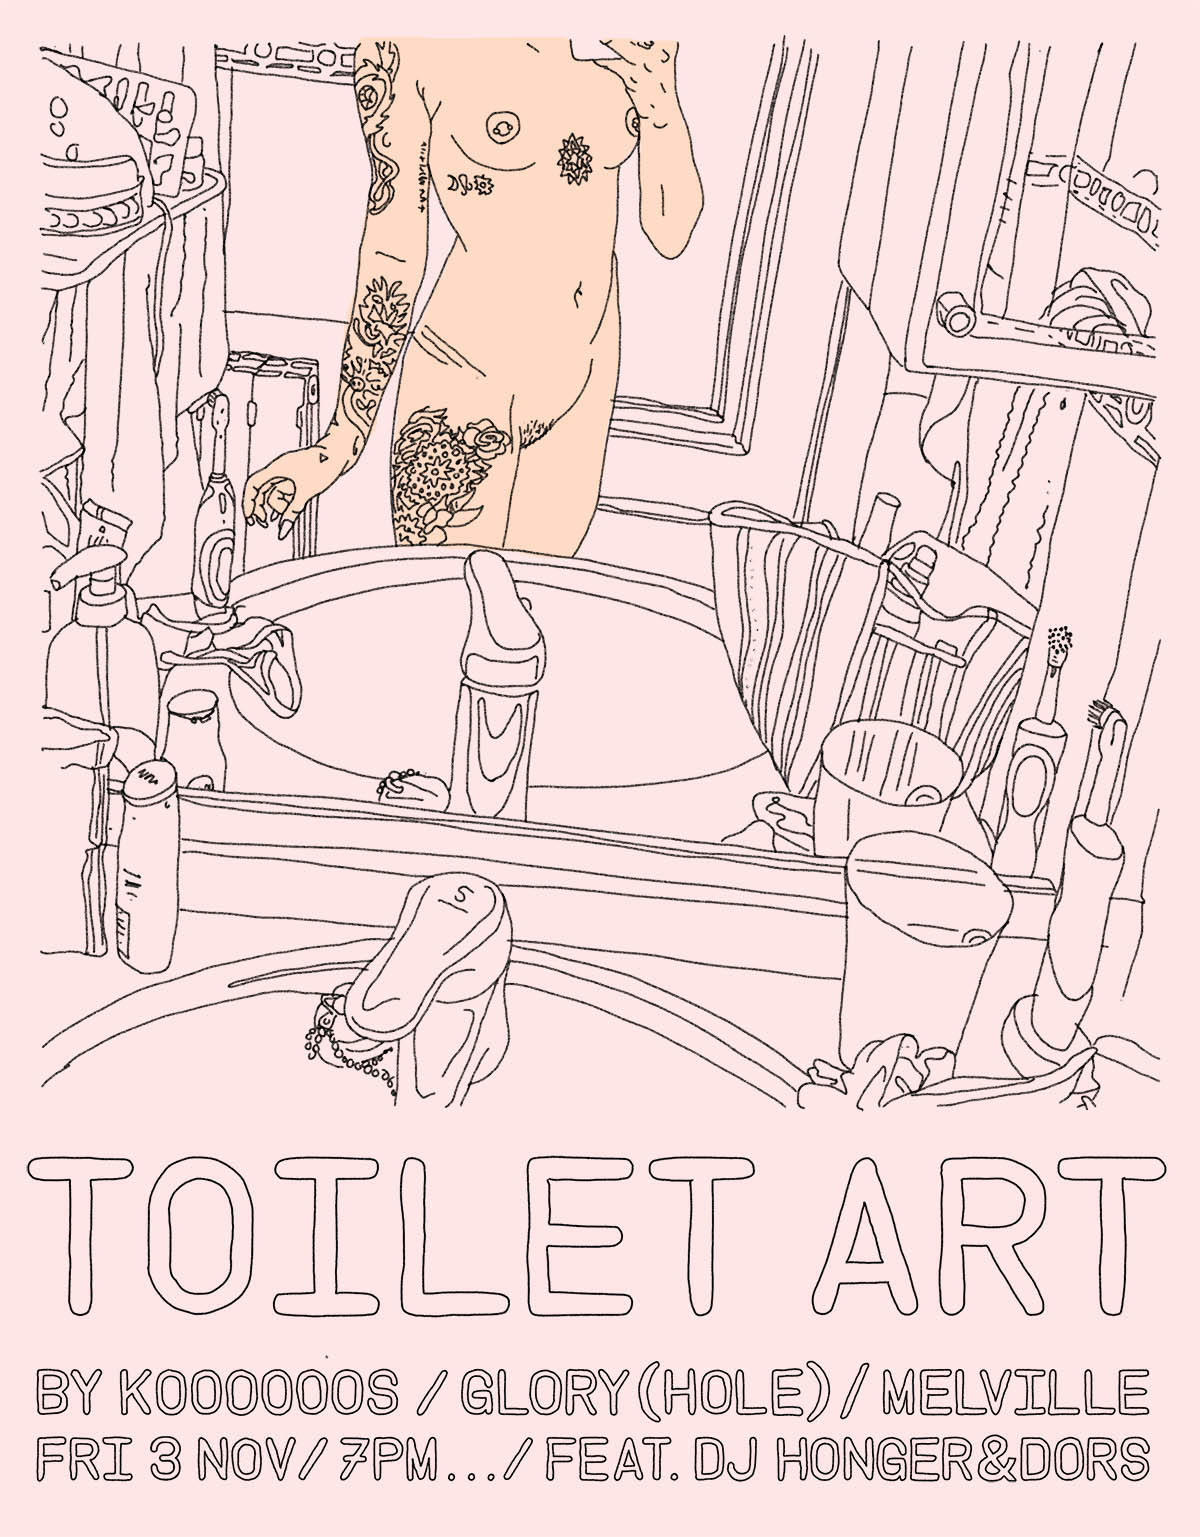 TOILET-ART-INVITE-2b.jpg